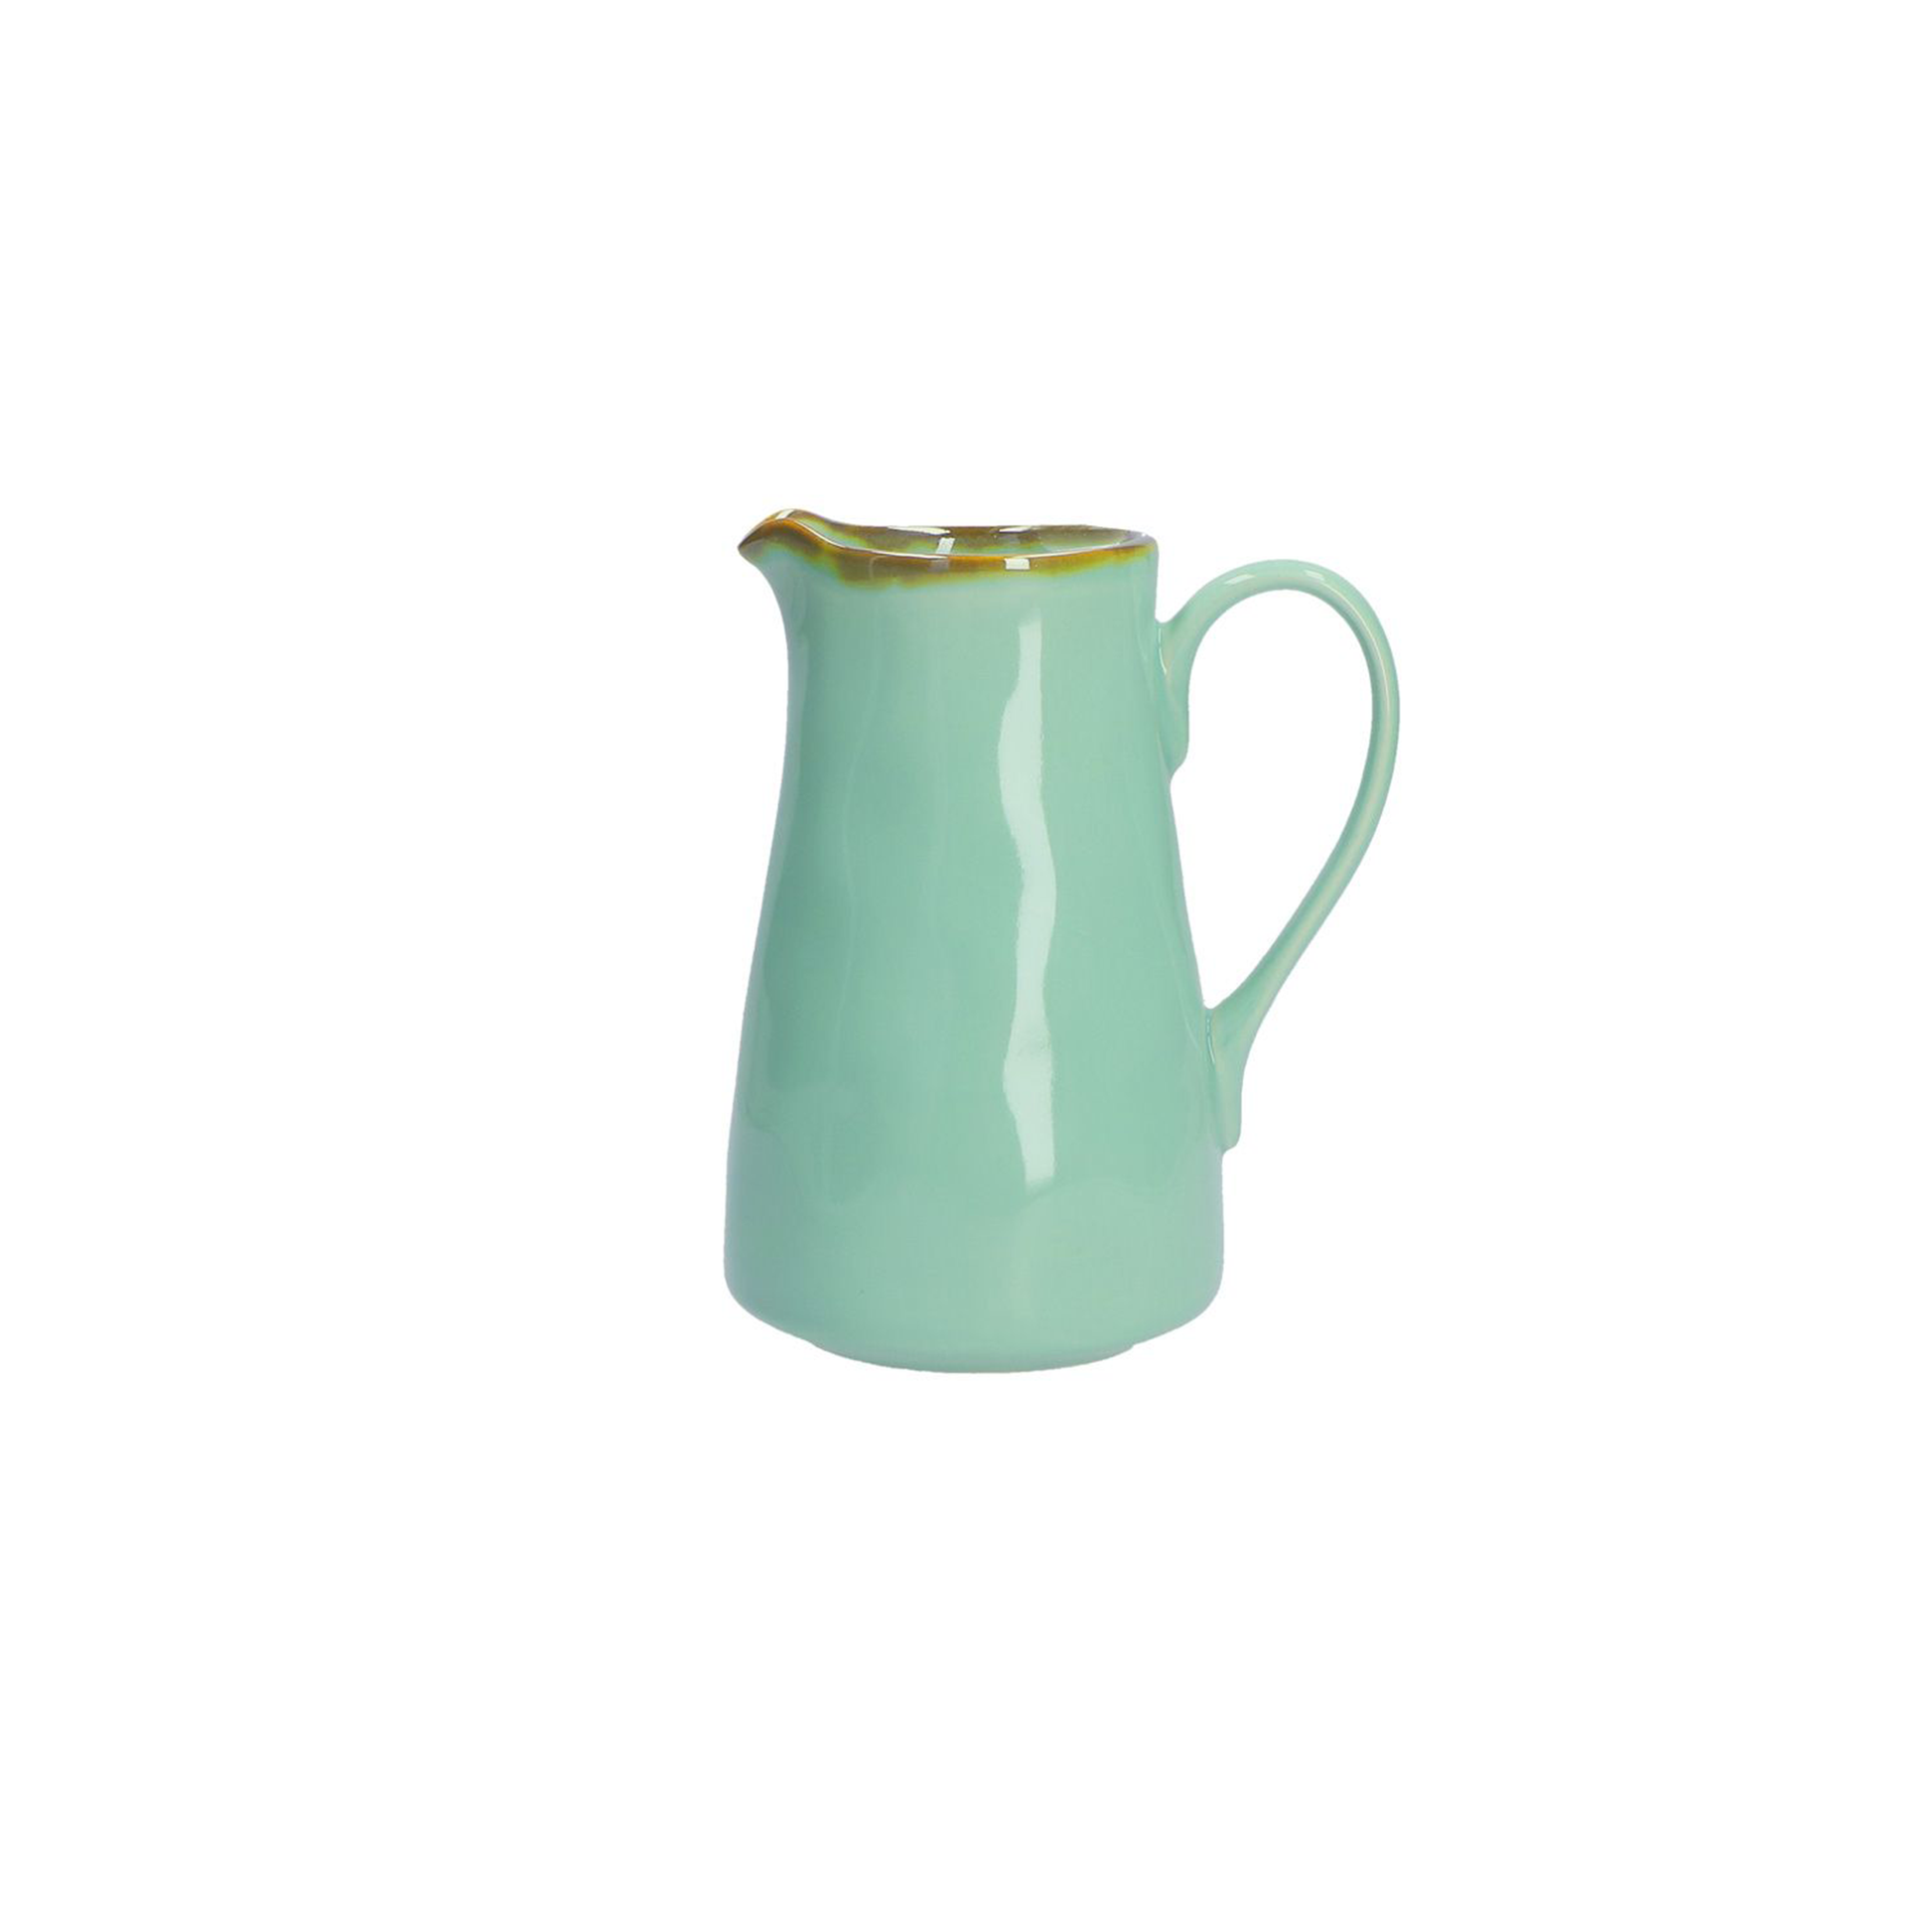 a tiffany green glazed jug